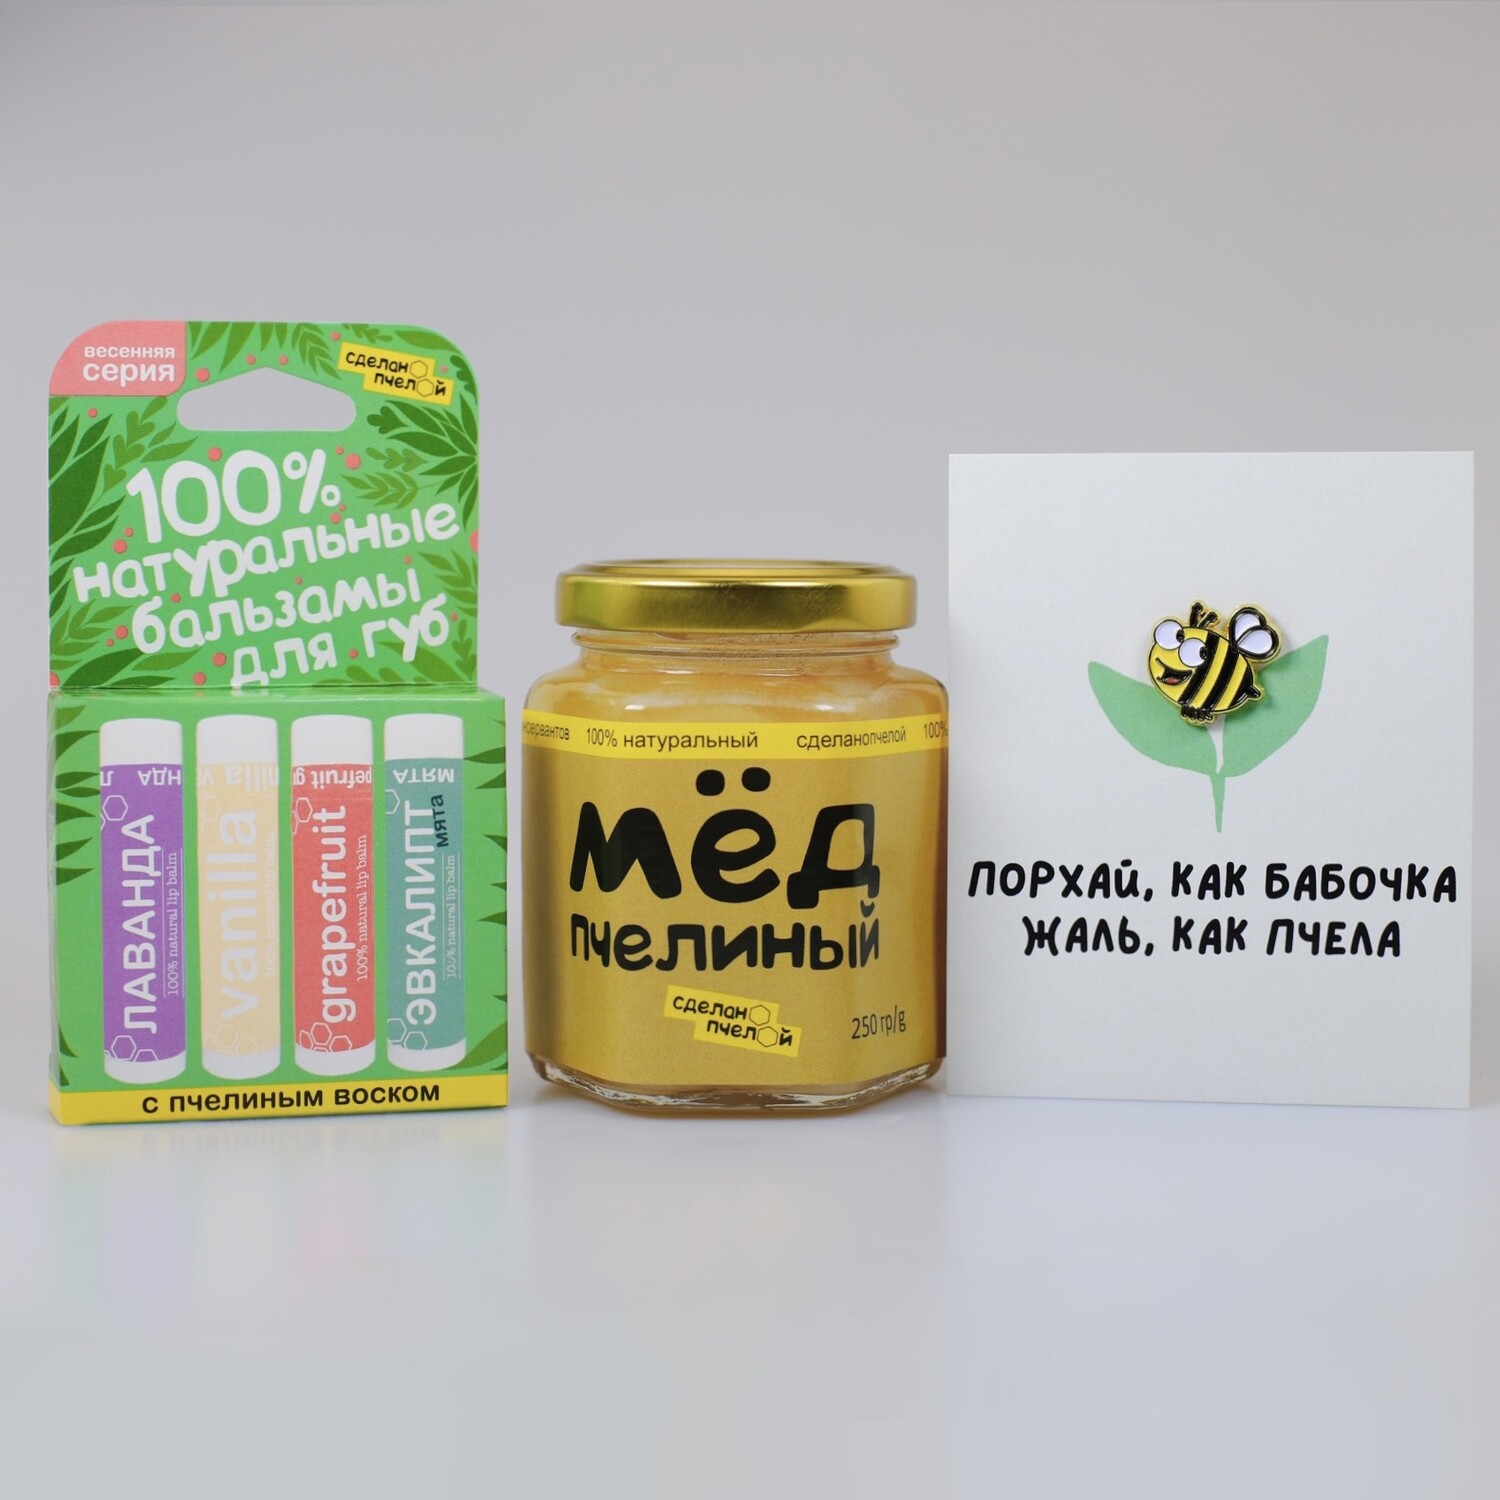 Подарочный набор "Весенняя серия" + брошь + открытка + мёд в боксе "сделанопчелой"